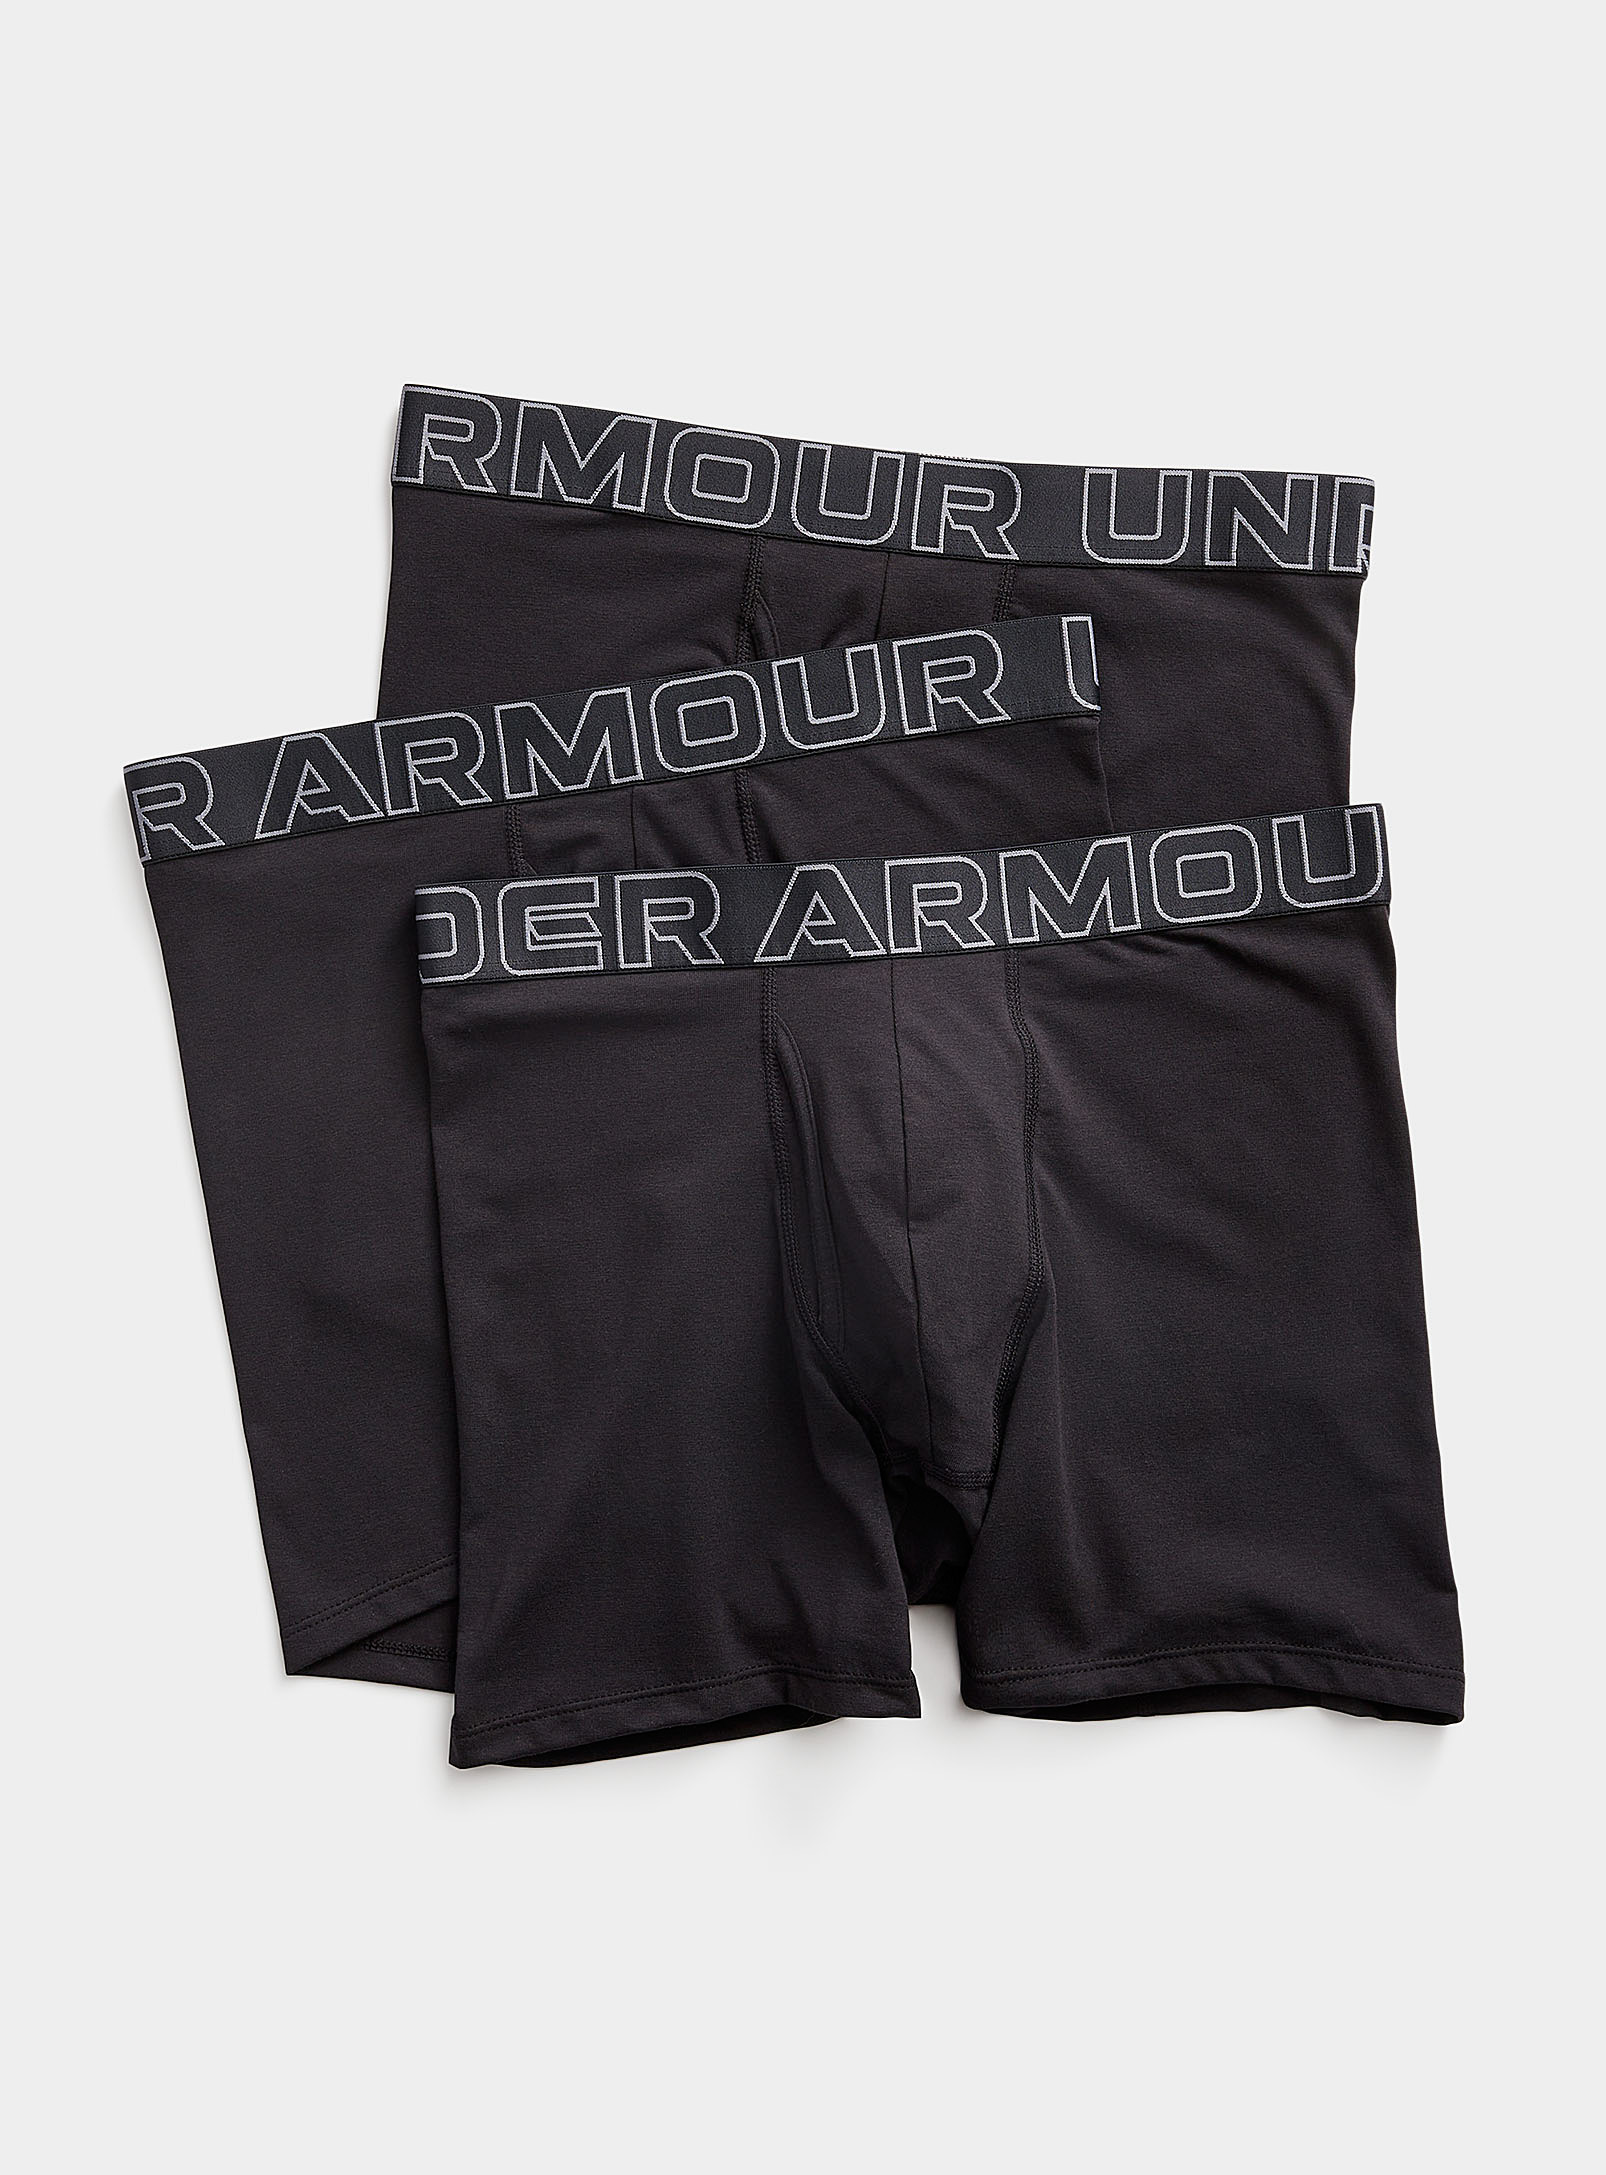 Under Armour Boxerjock Black Performance Boxer Briefs 3-pack